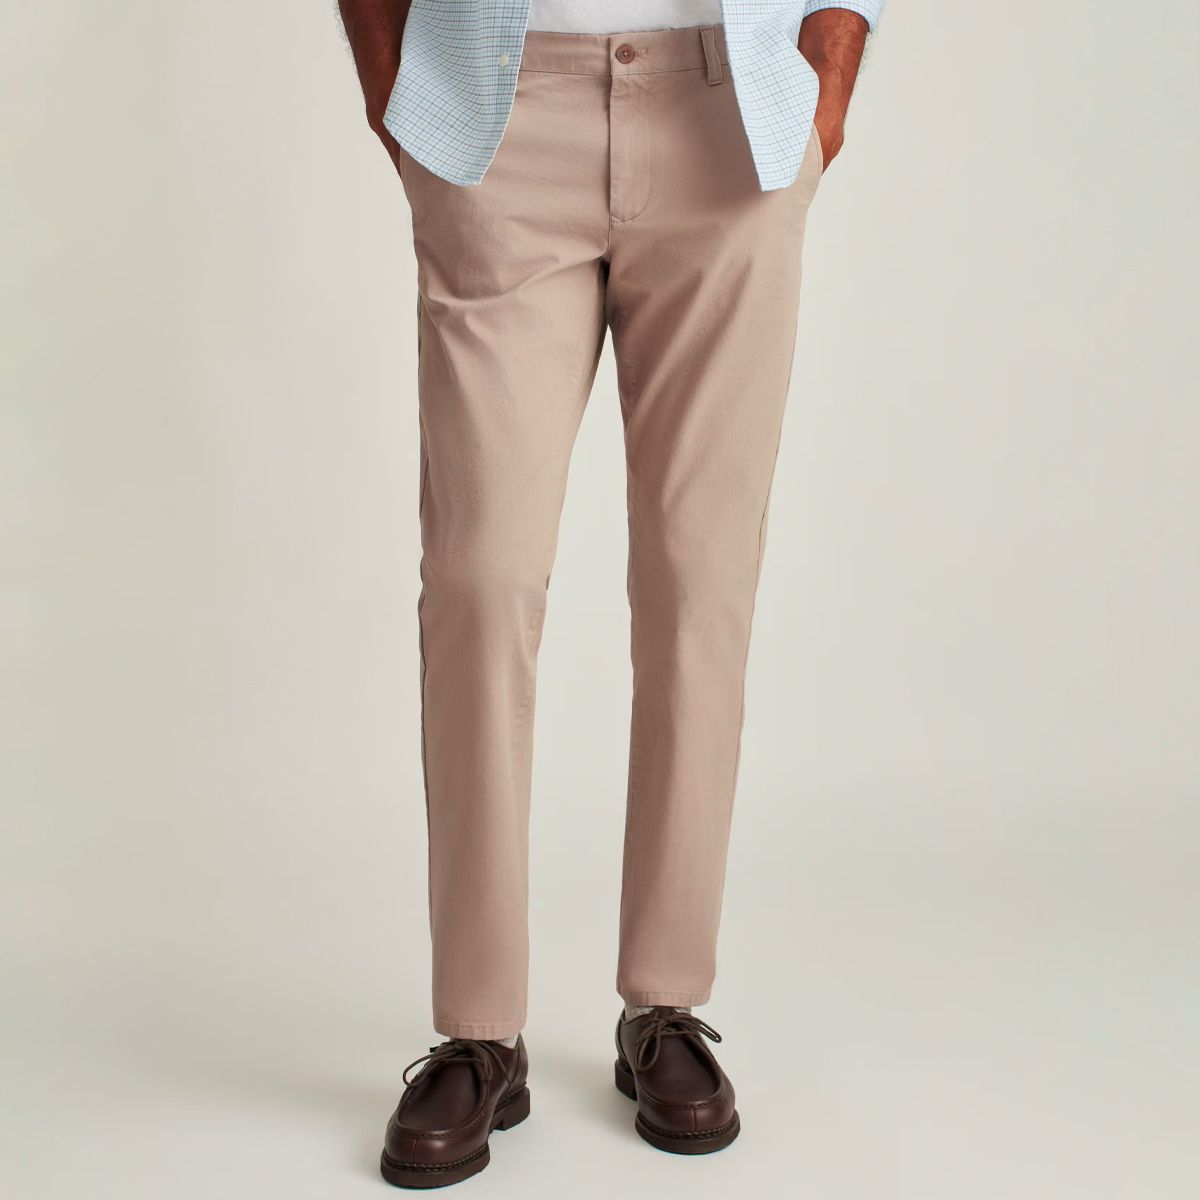 160 Best Khaki Pants ideas  mens outfits mens fashion men casual